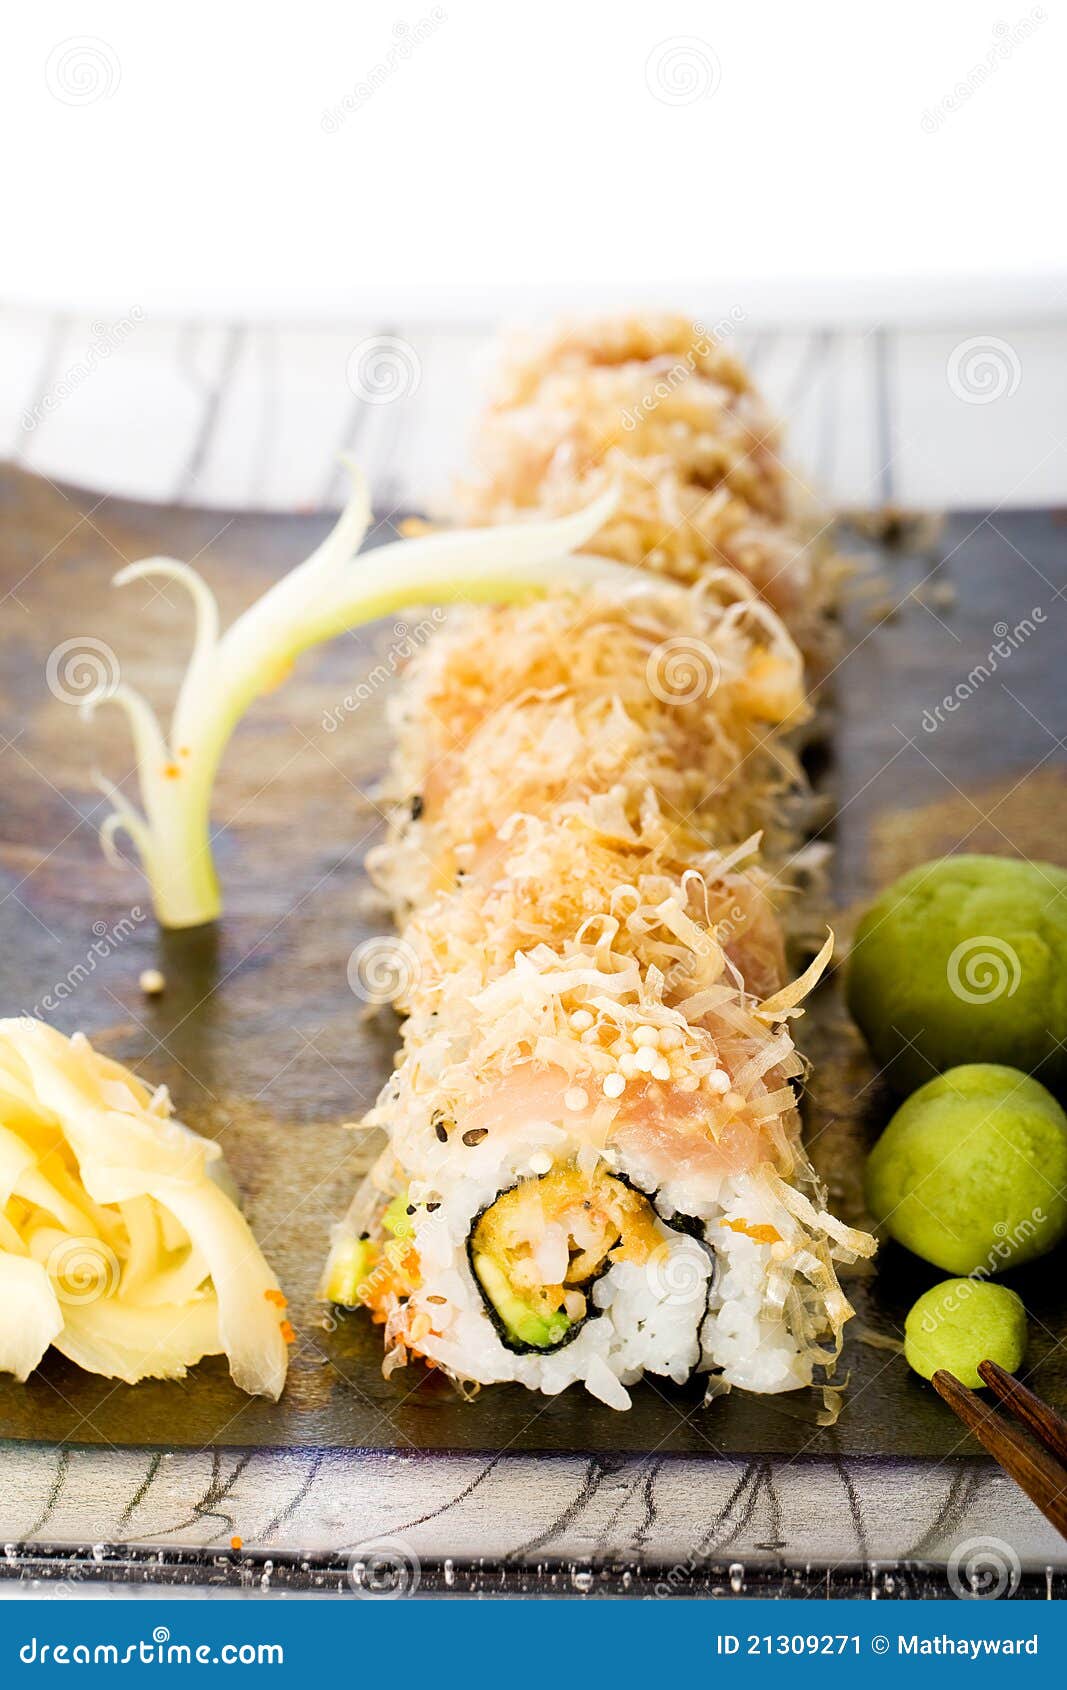 金枪鱼外卷寿司的做法_【图解】金枪鱼外卷寿司怎么做如何做好吃_金枪鱼外卷寿司家常做法大全_暗黑料理系学森_豆果美食